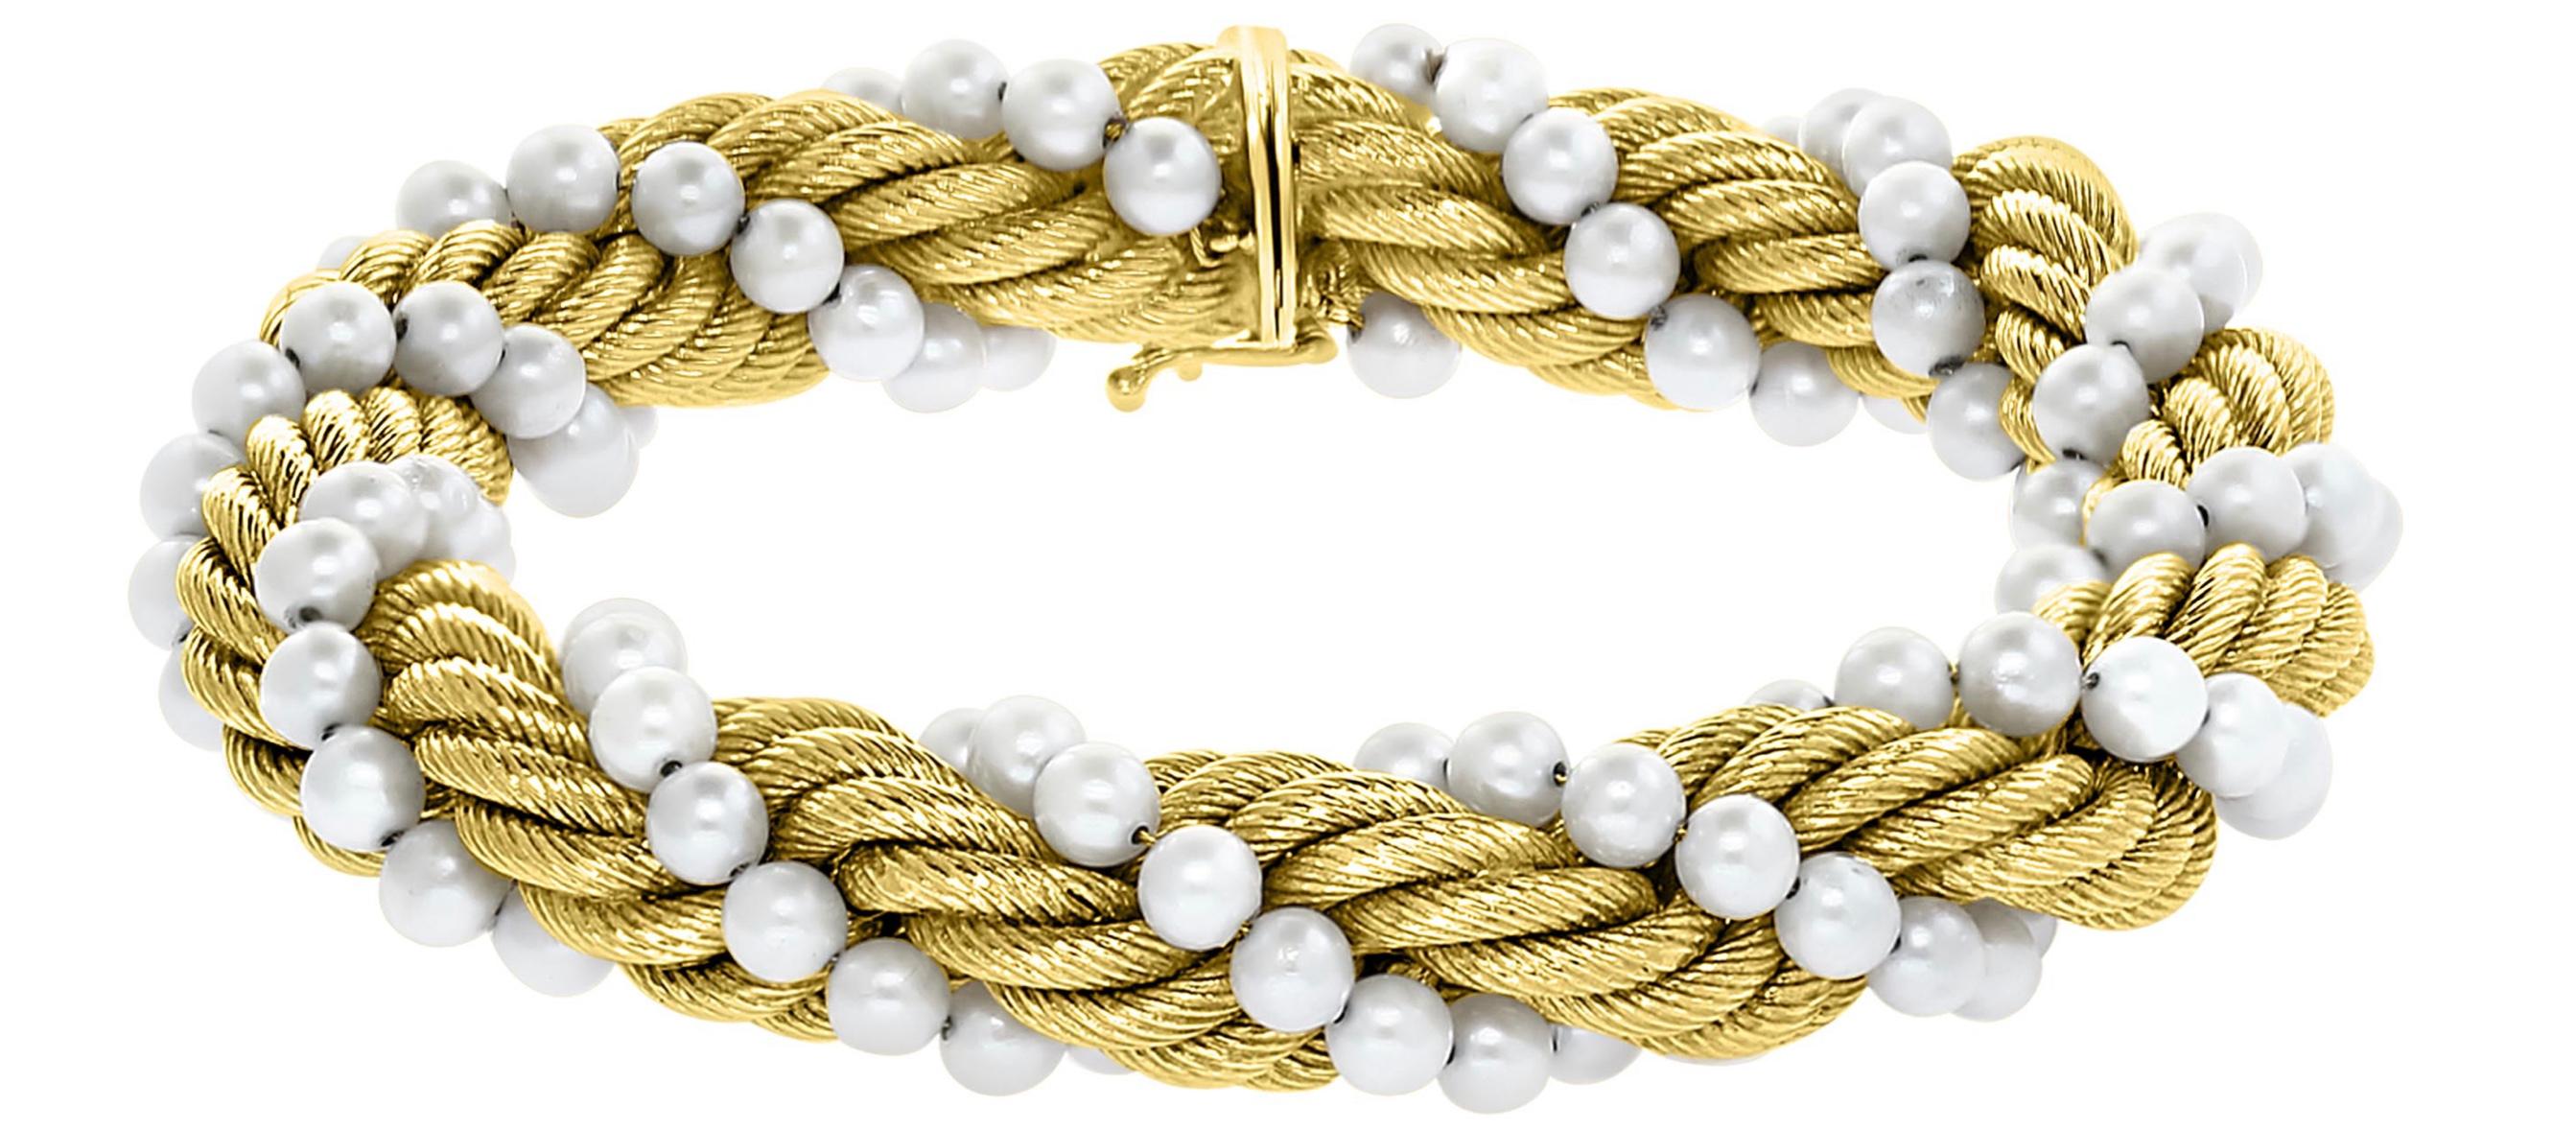 Bucherer Zweiteiliges Set aus Halskette und Armband  18 Karat Weißgold  Gelbgold & Perlen

Diese Halskette  und passendes Armband  Sie sind aus 18 Karat gefertigt  Gelb  Gold . 
Perlen und goldene Seilkette werden gedreht, um ein einzigartiges